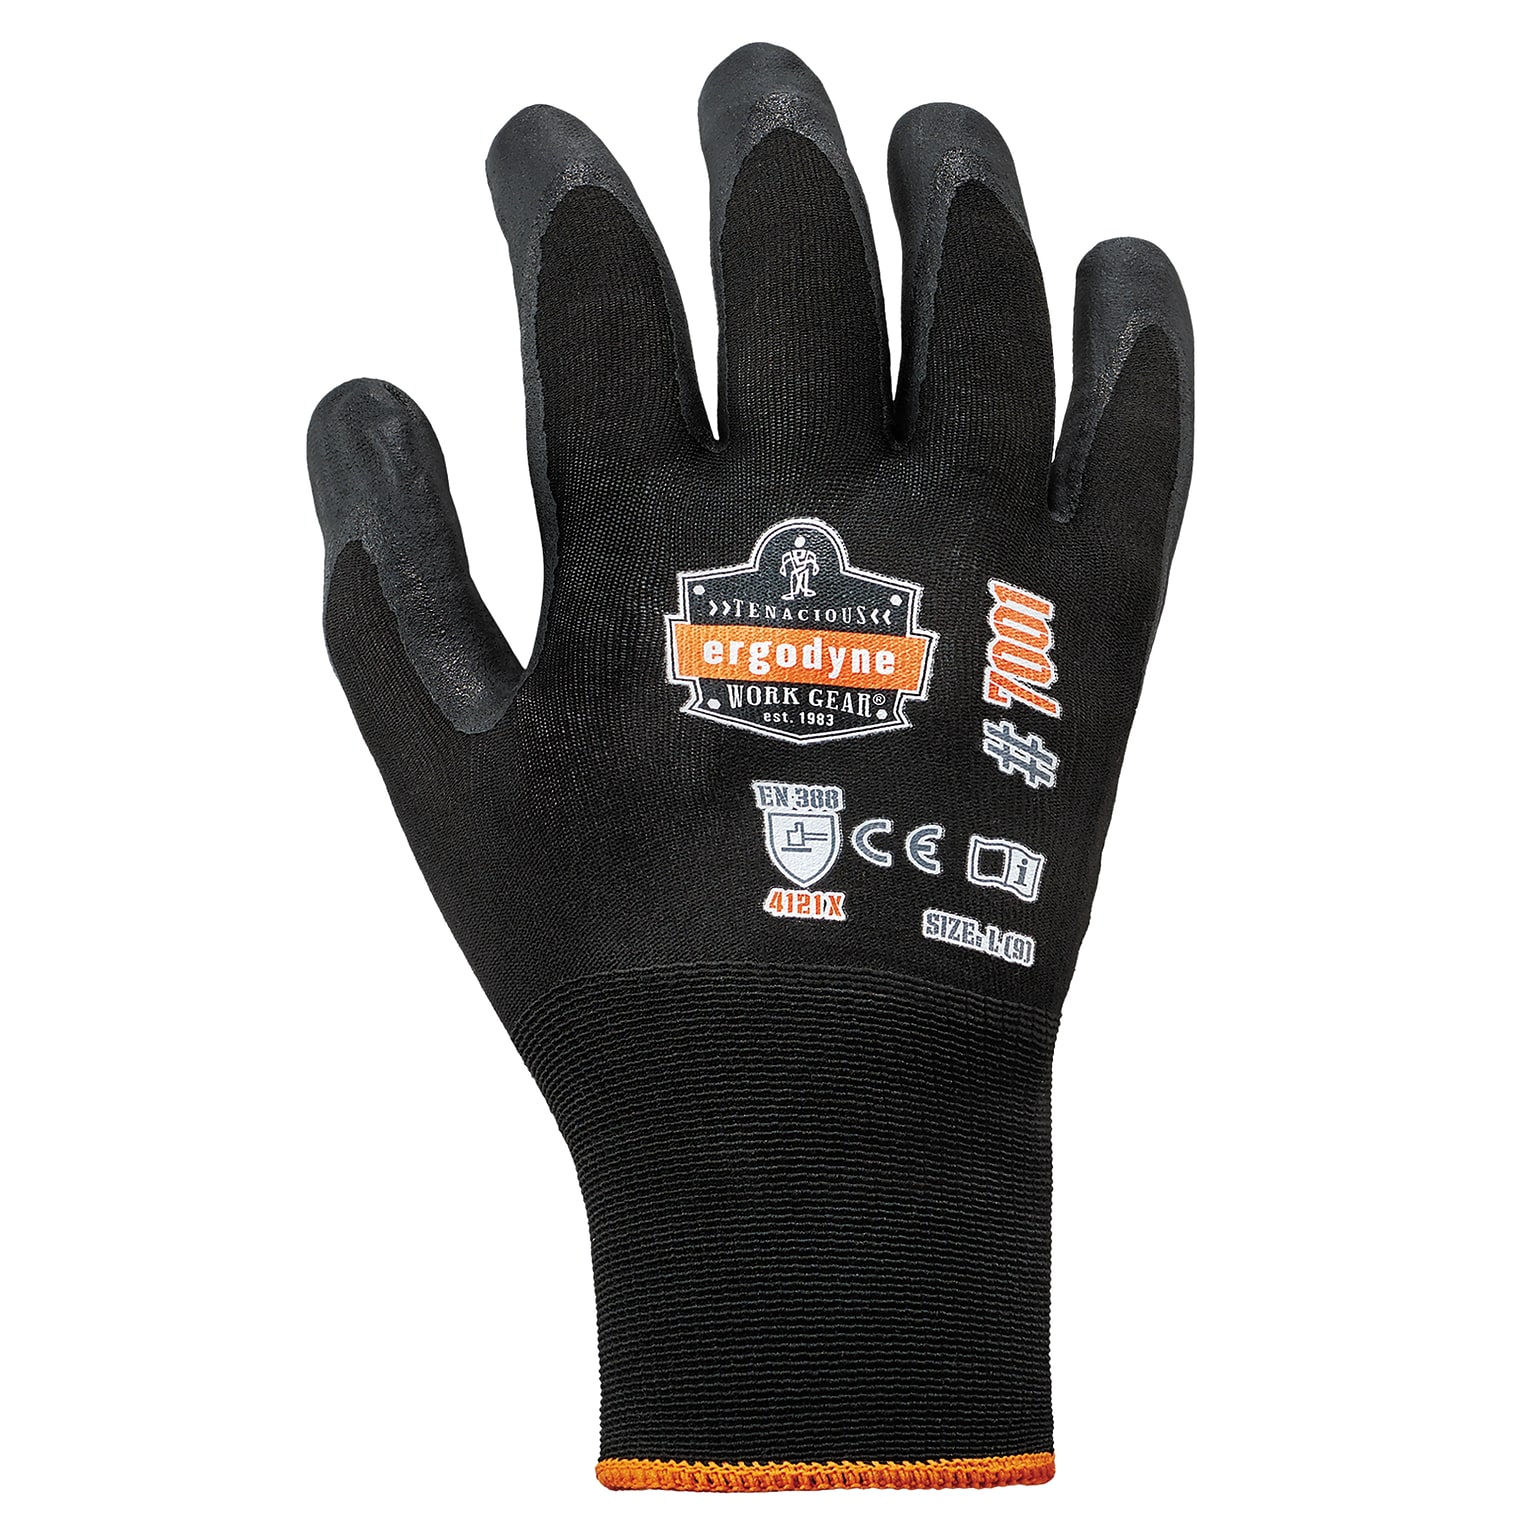 Ergodyne ProFlex 7001 Nitrile Coated Gloves, ANSI Level 3 Abrasion Resistance, Black, XXL, 144 Pairs (17856)